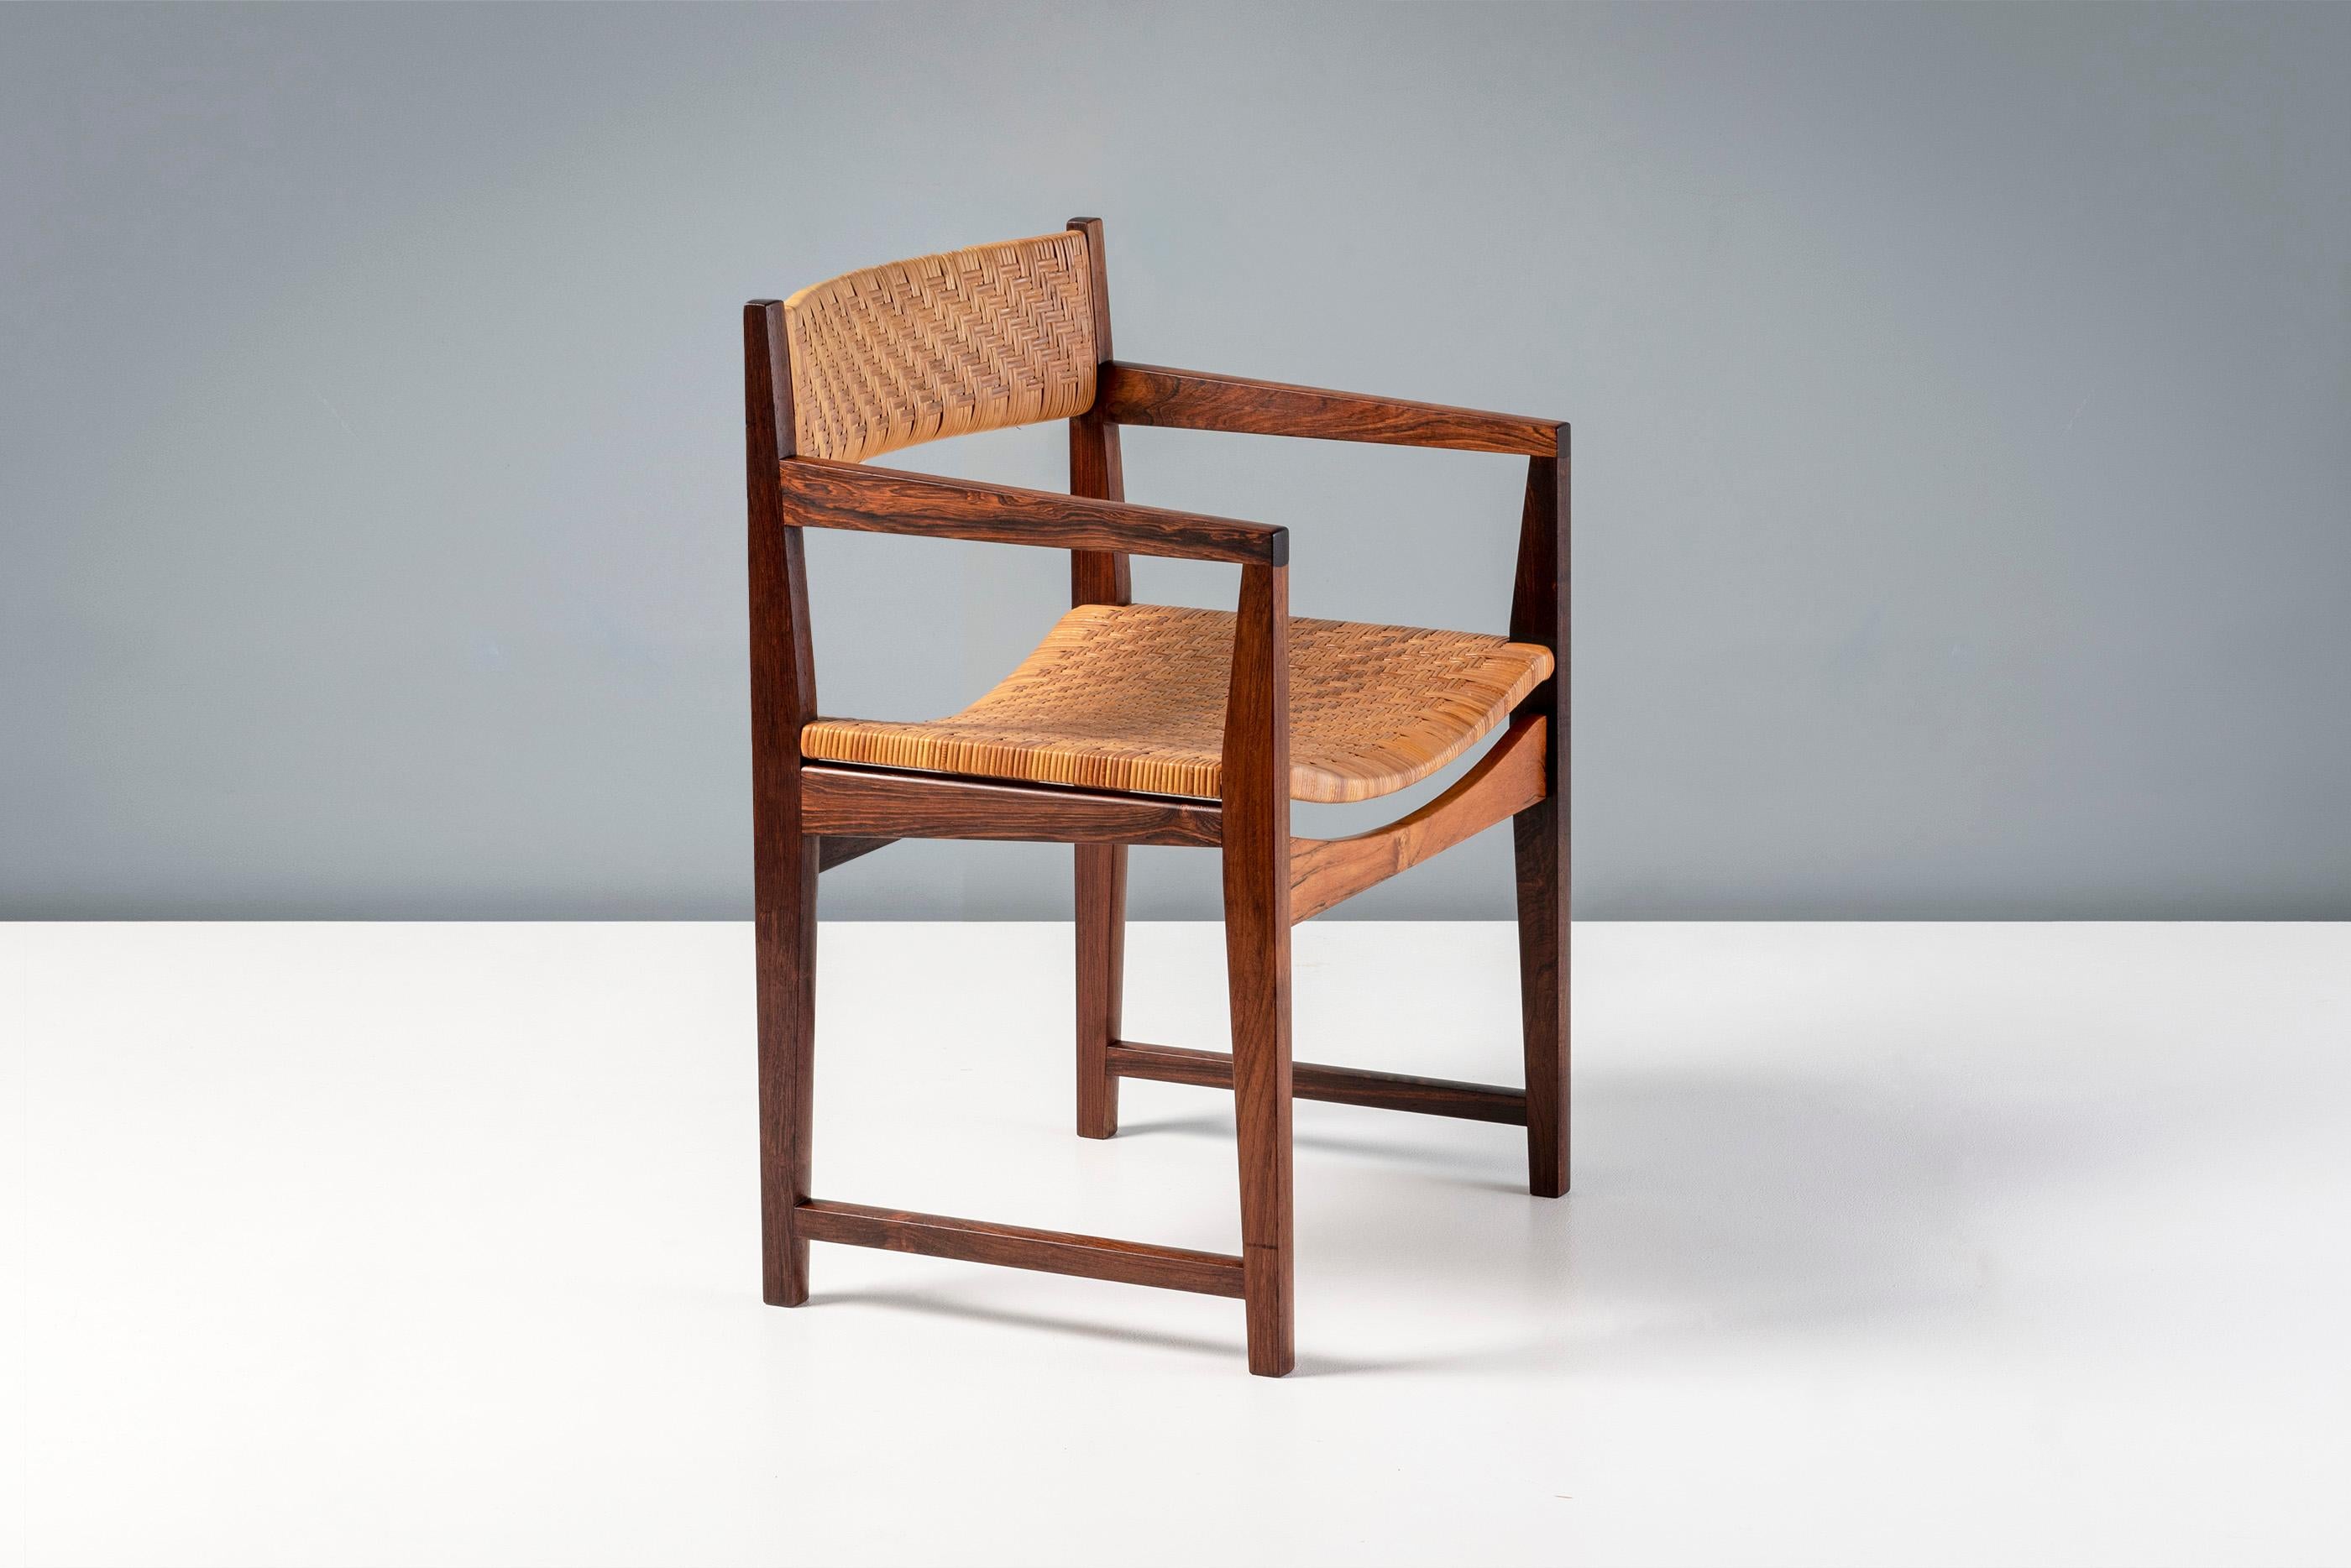 Peter Hvidt - Fauteuil modèle 350, 1957

Rare exemplaire en bois de rose de ce fauteuil moderniste de Peters Hvidt, produit par Søborg Møbler, Danemark. La canne en rotin d'origine est dans un état impeccable. 

H : 75cm  /  D : 48cm  /  W: 62cm
